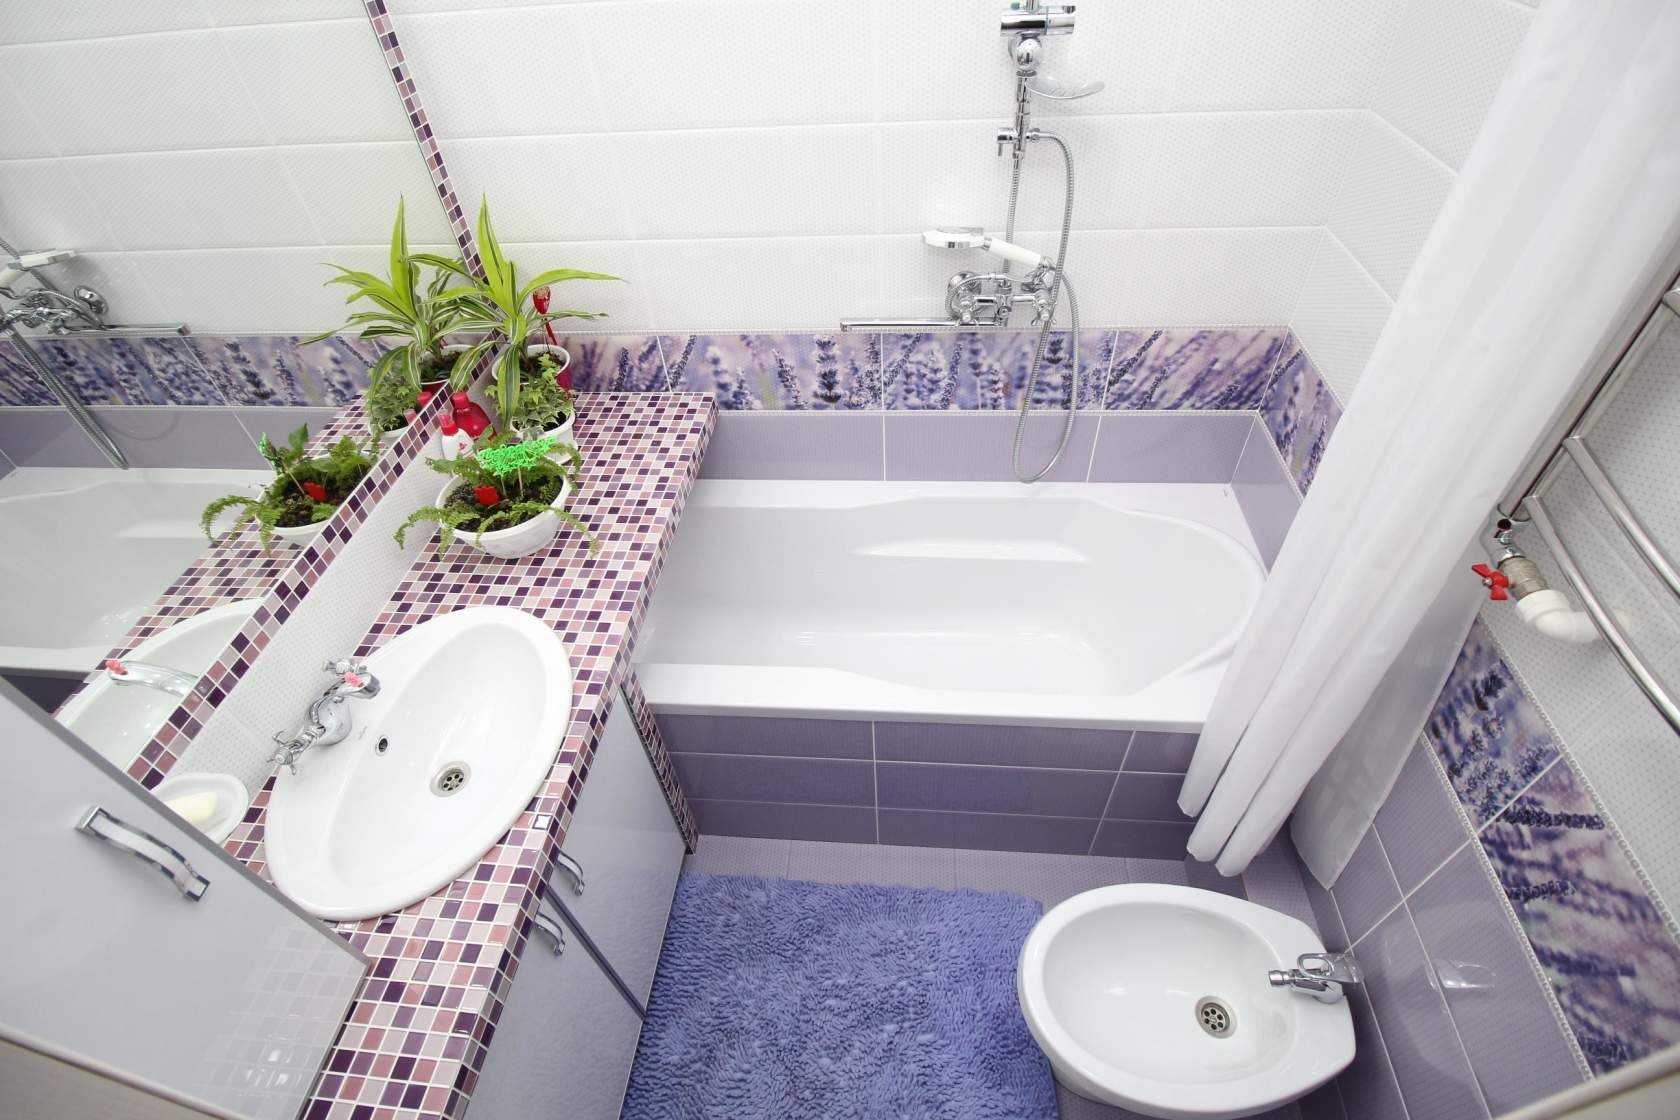 Ванная комната в светлых тонах реальные фото ванной комнаты в современном стиле Преимущества светлых цветов в интерьере санузла Выбор разных вариантов комбинации цветов для создания уютной ванной